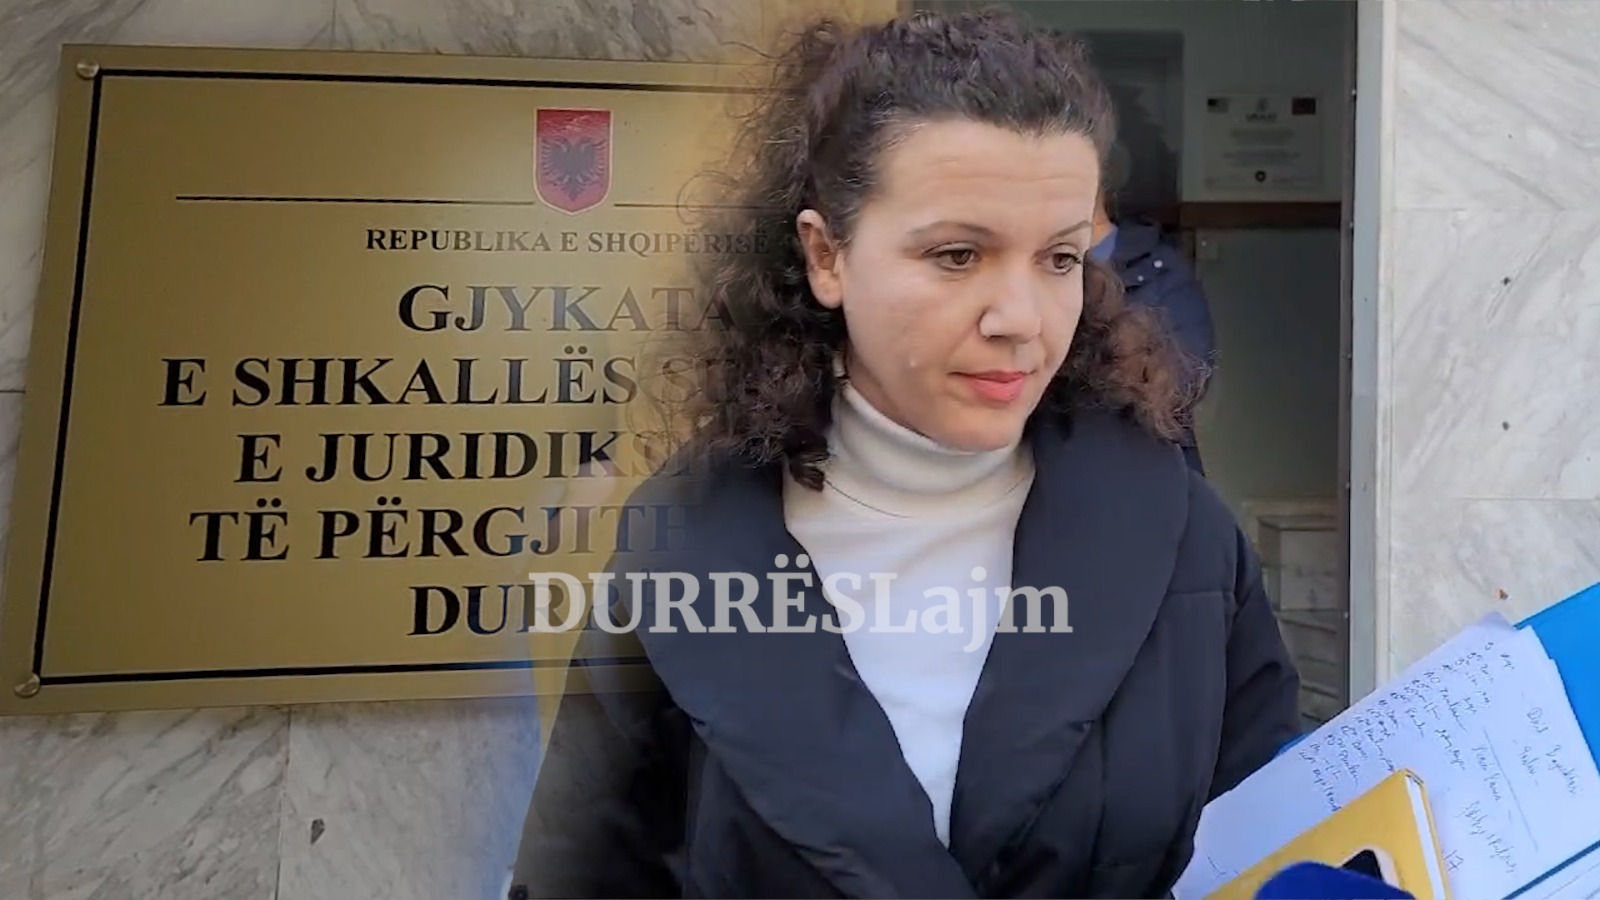 Gjykata la në burg 3 fëmijët, flet avokatja: Do merren sërish në pyetje nga Prokuroria (VIDEO)